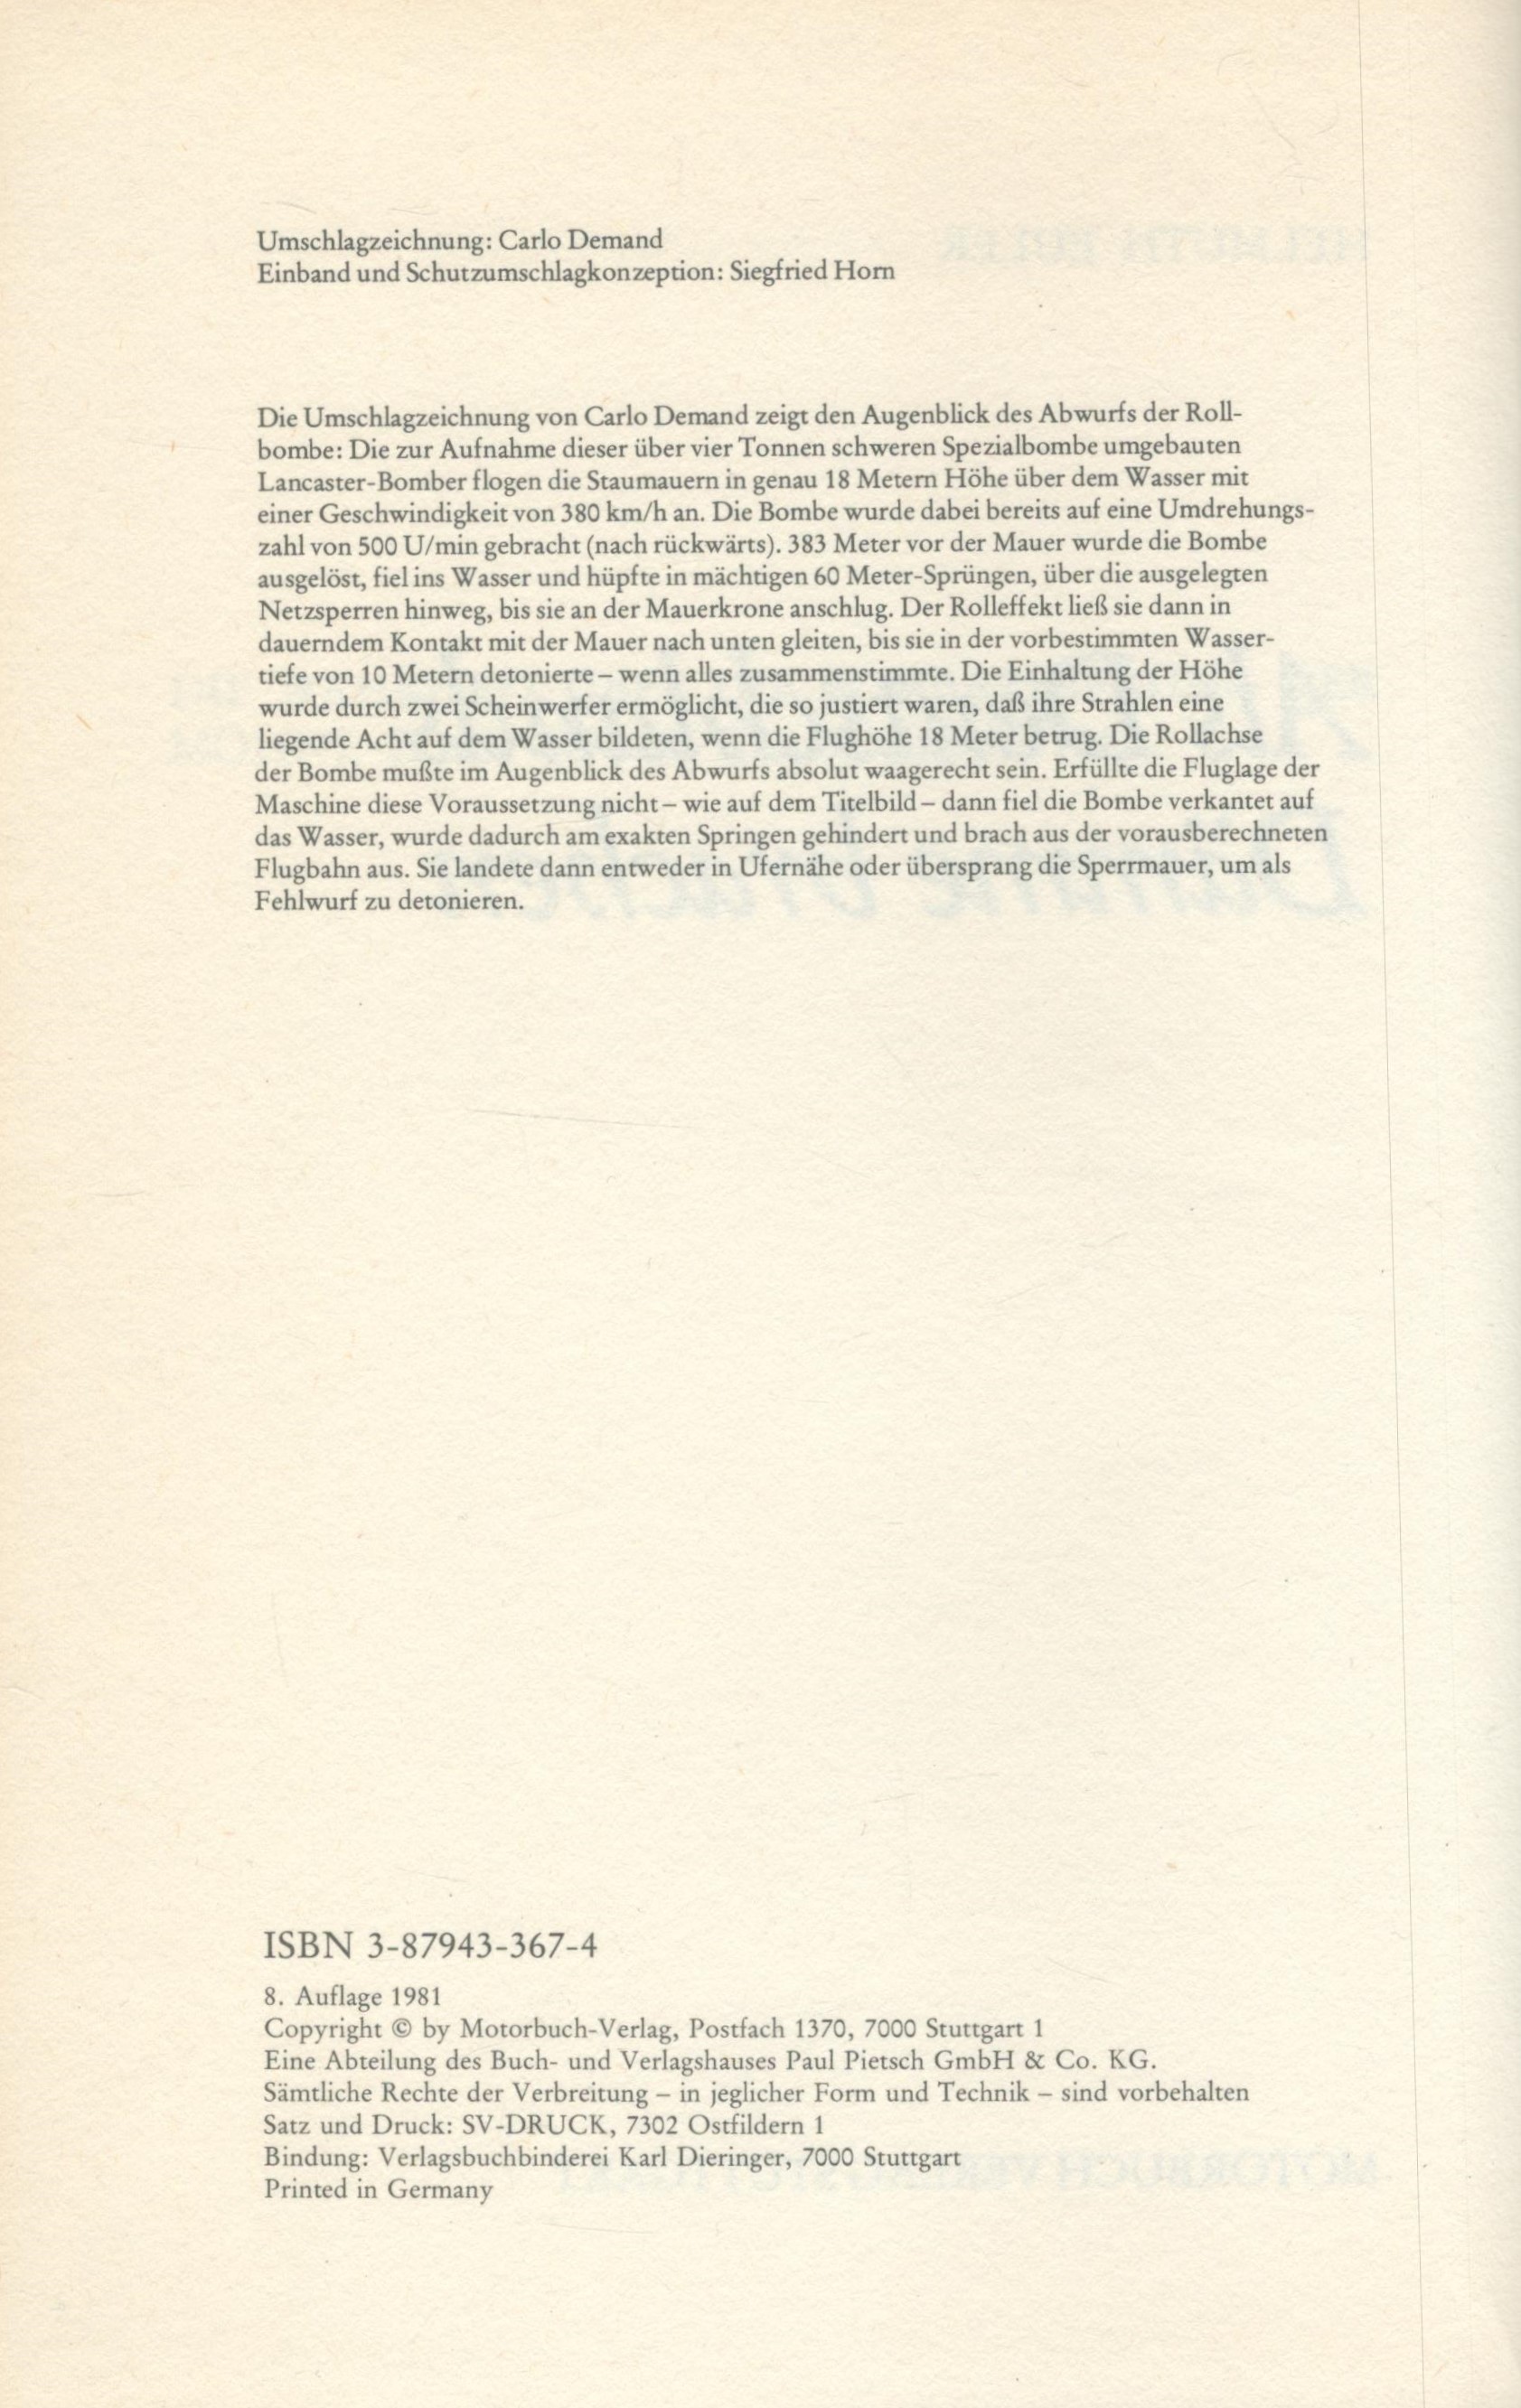 Helmut Euler Hardback Book Titled Als Deutschlands Damme Brachen. Published in 1981. 224 Pages. - Image 3 of 3